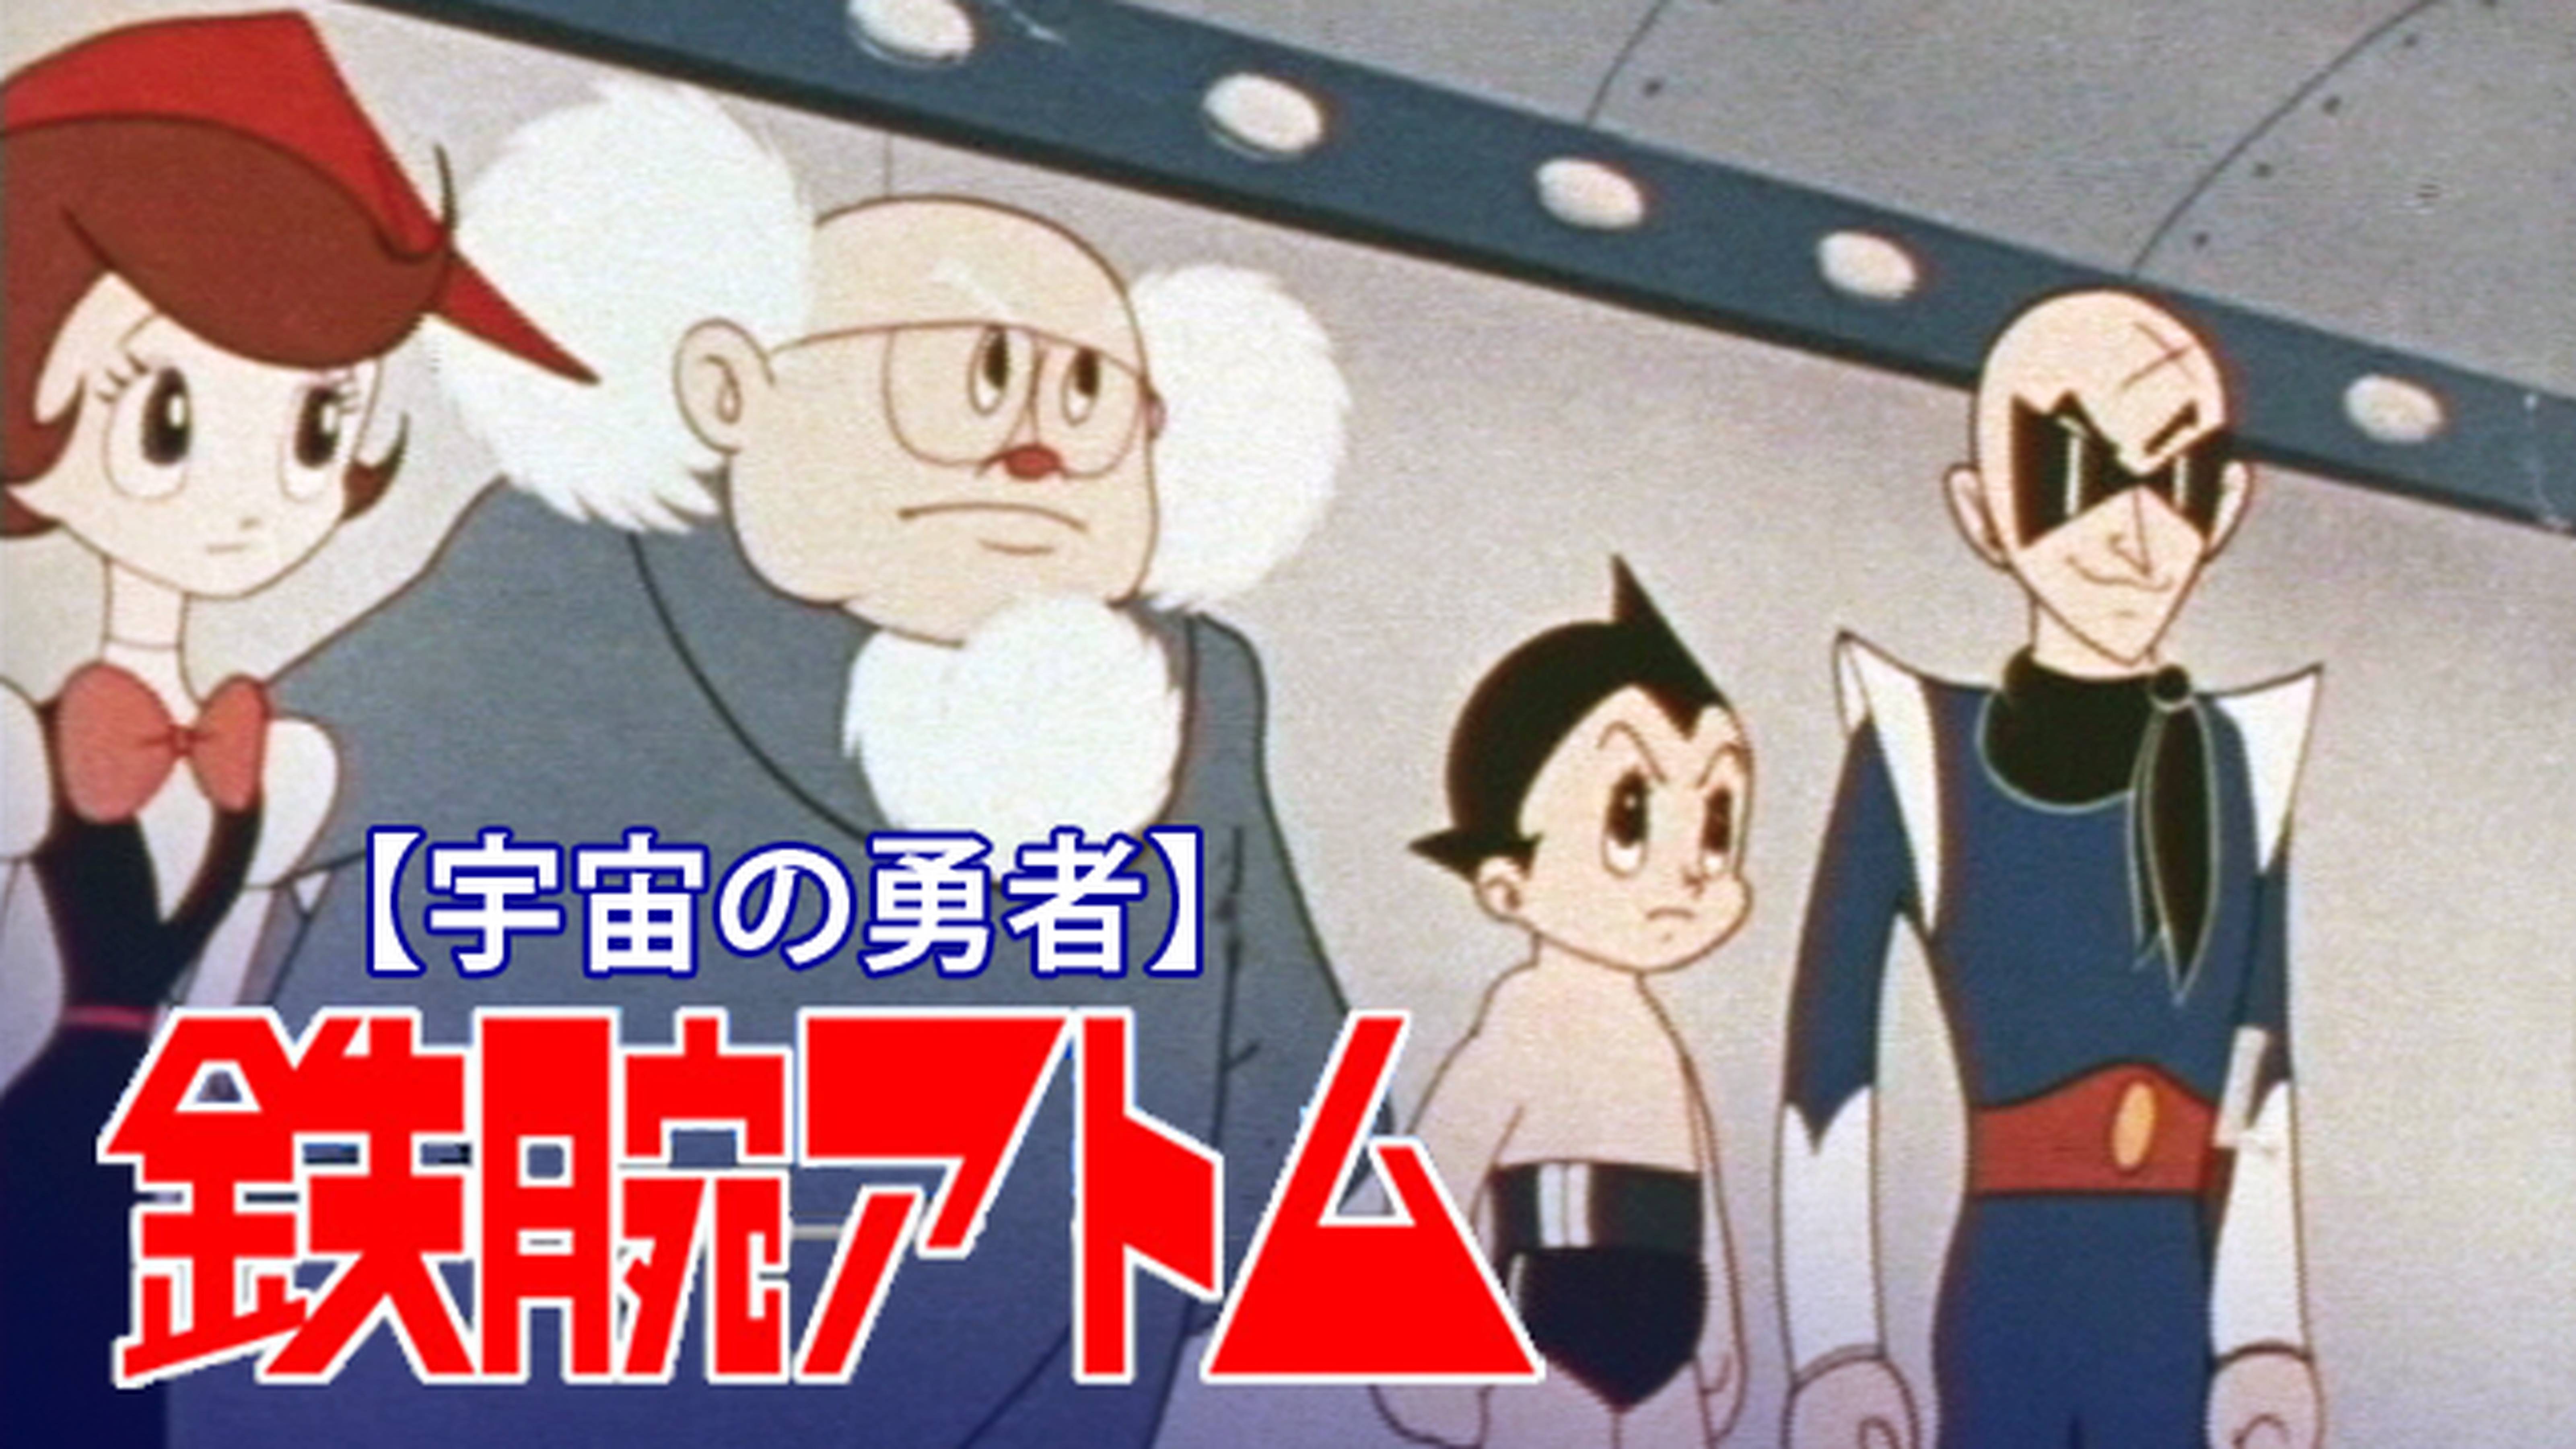 鉄腕アトム 1963 アニメ放題 1カ月無料のアニメ見放題サイト